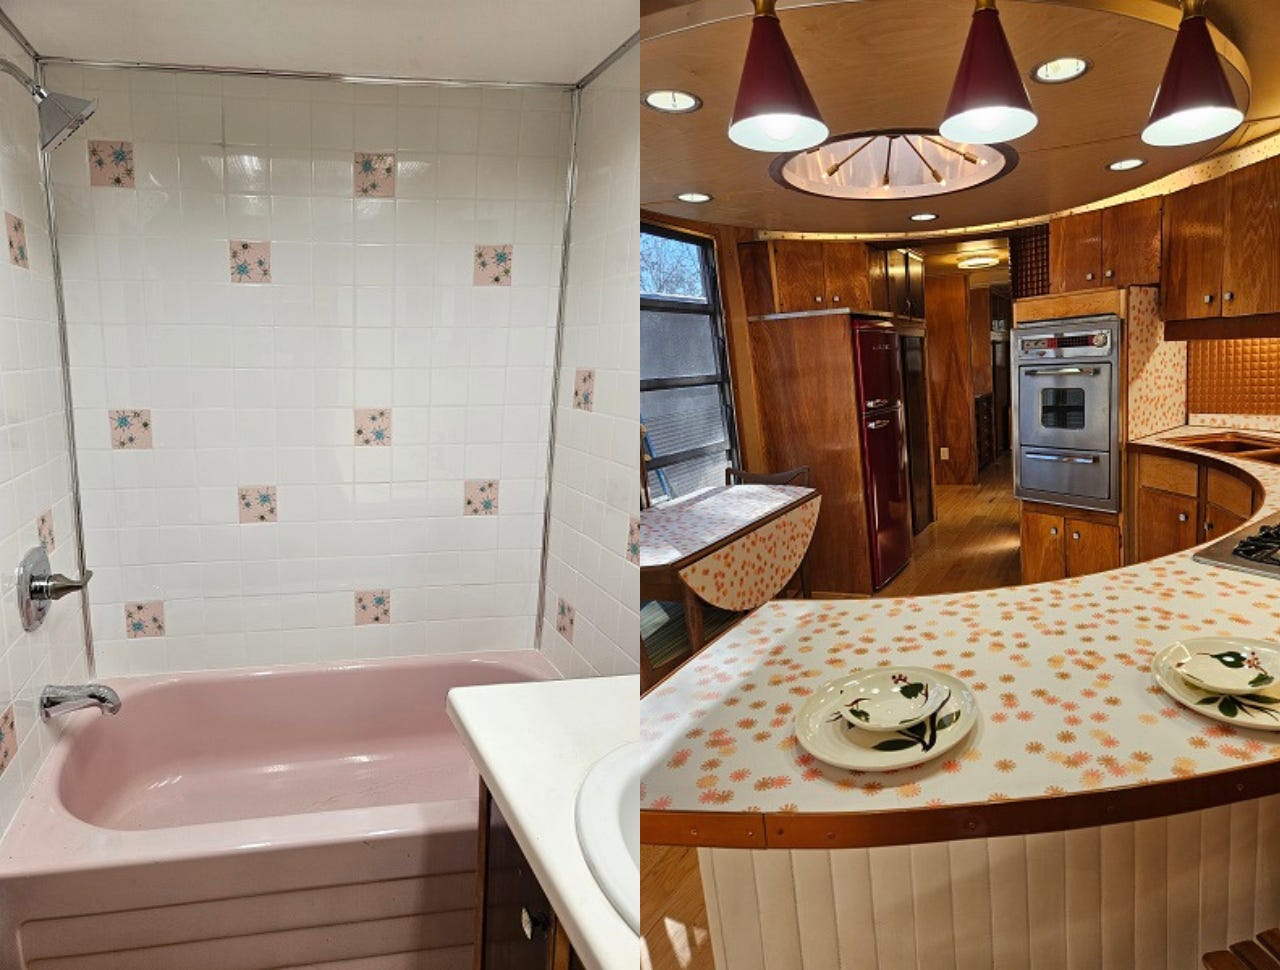 Das Badezimmer verfügt über eine rosafarbene Badewanne und die Küche über eine einzigartige runde Theke.